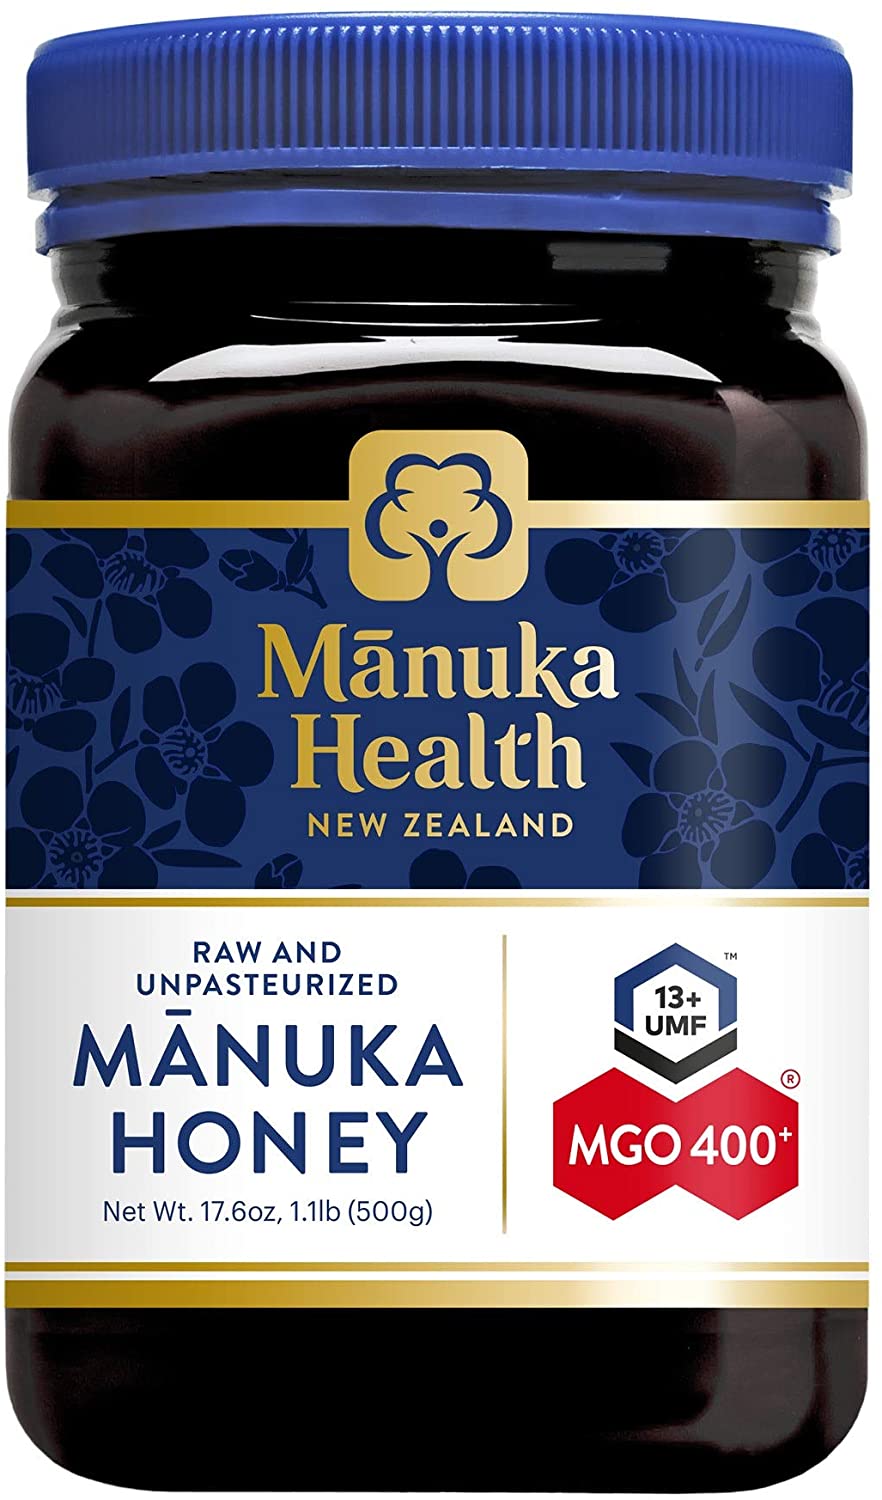 Manuka Health Mgo 400+ Manuka Honey, 500g